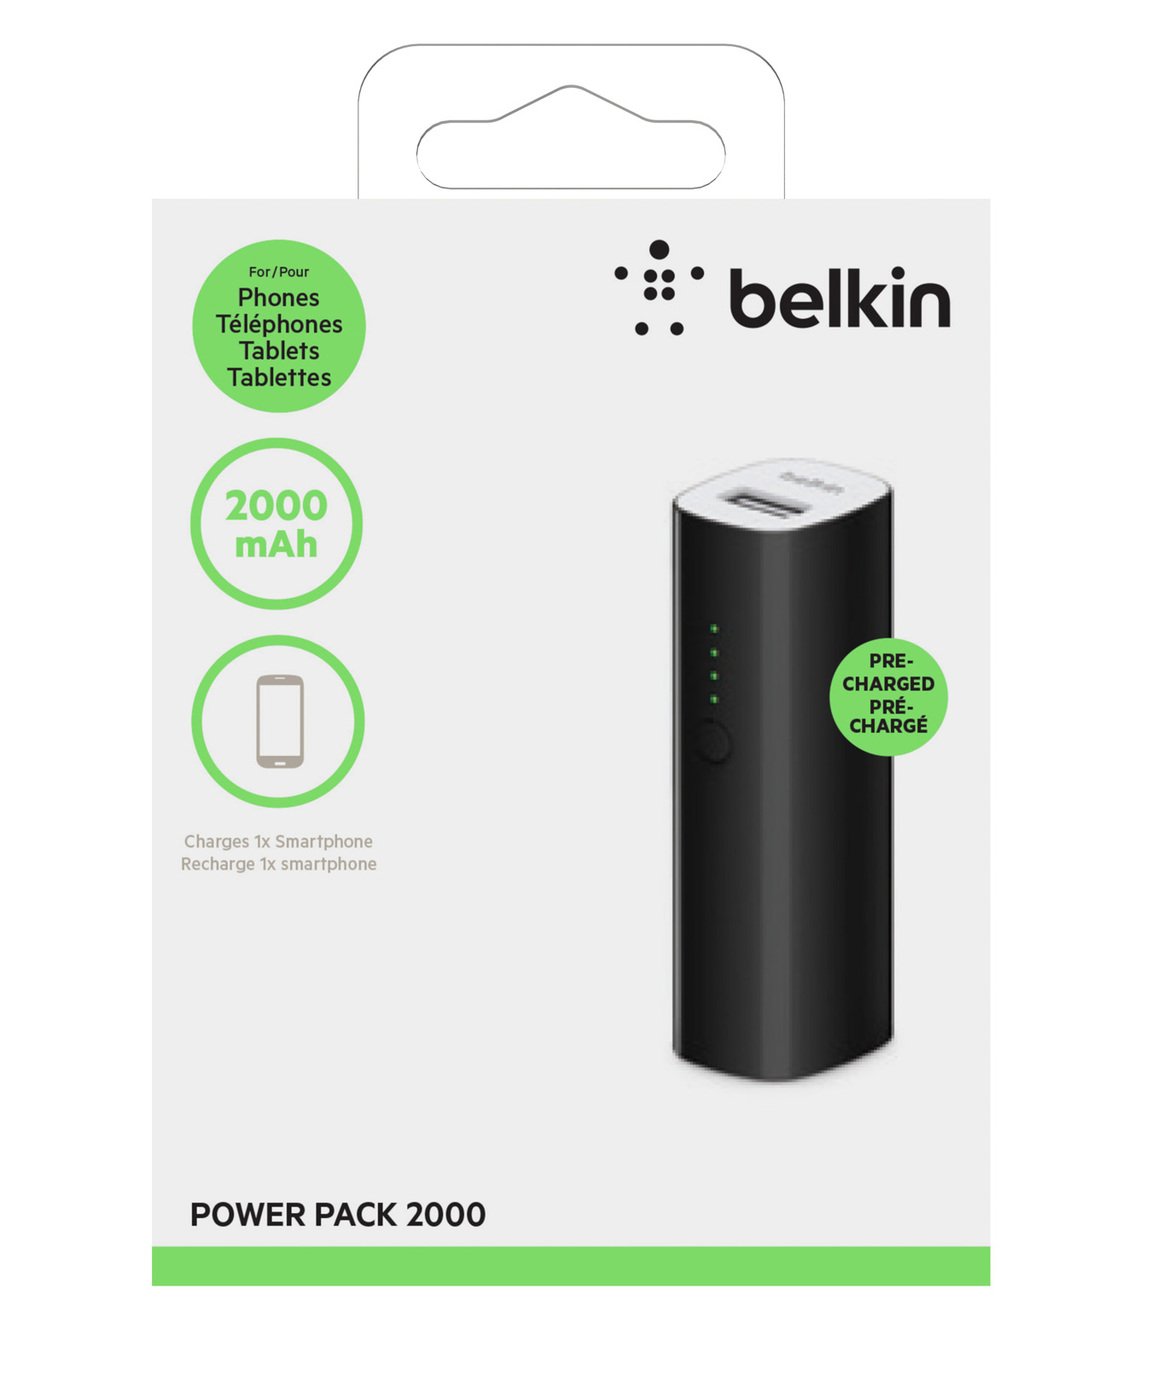 Belkin Power Pack Power Bank 2000mAh Review